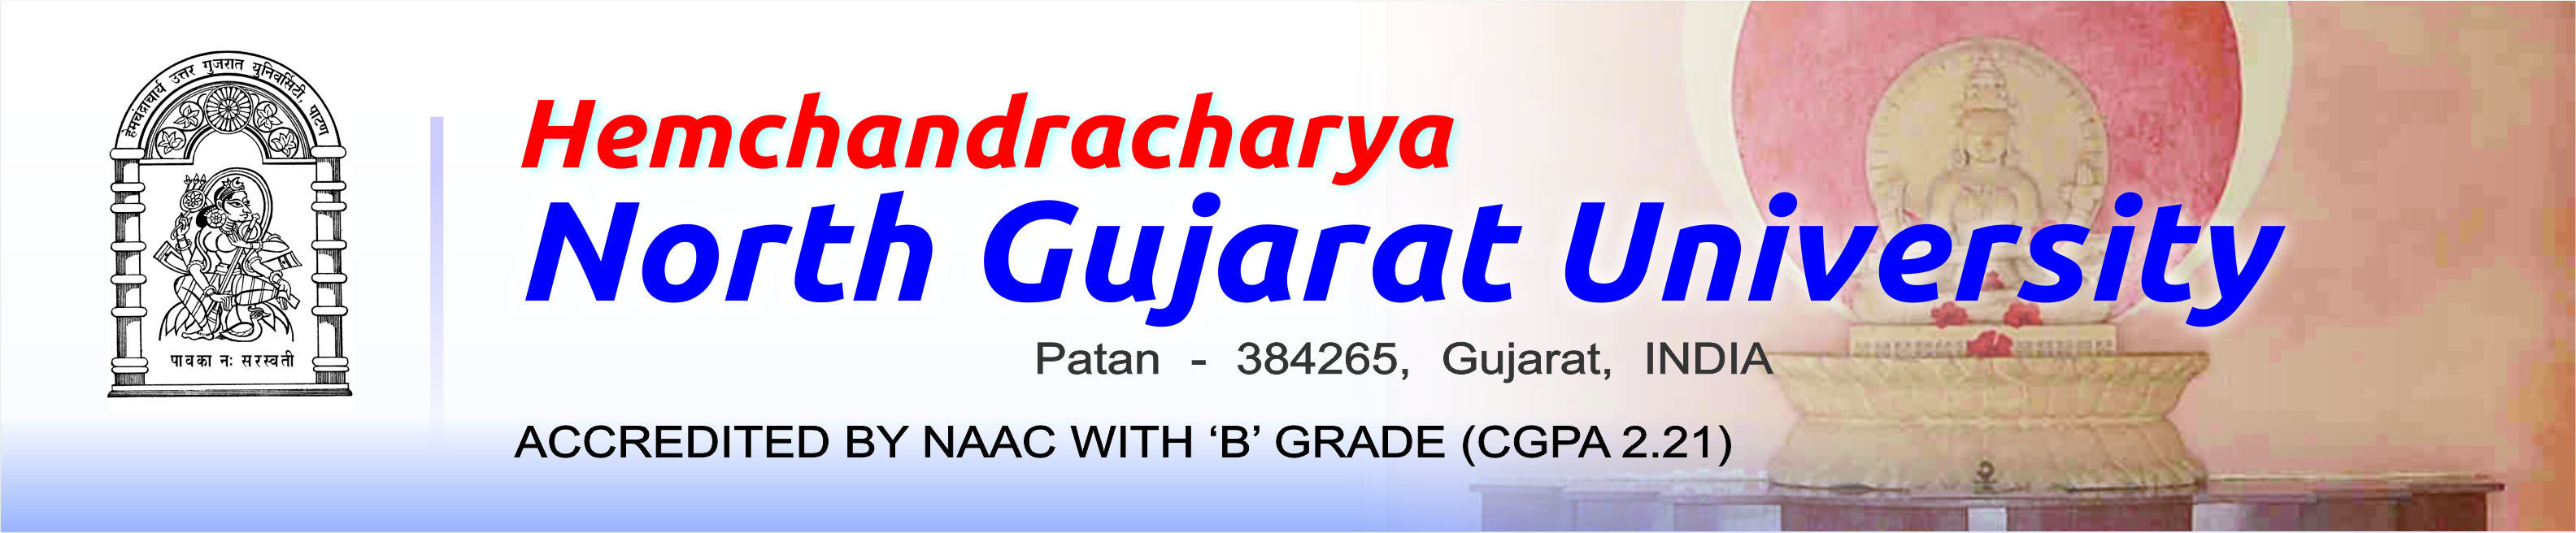 Hemchandracharya North Gujarat University - Explore